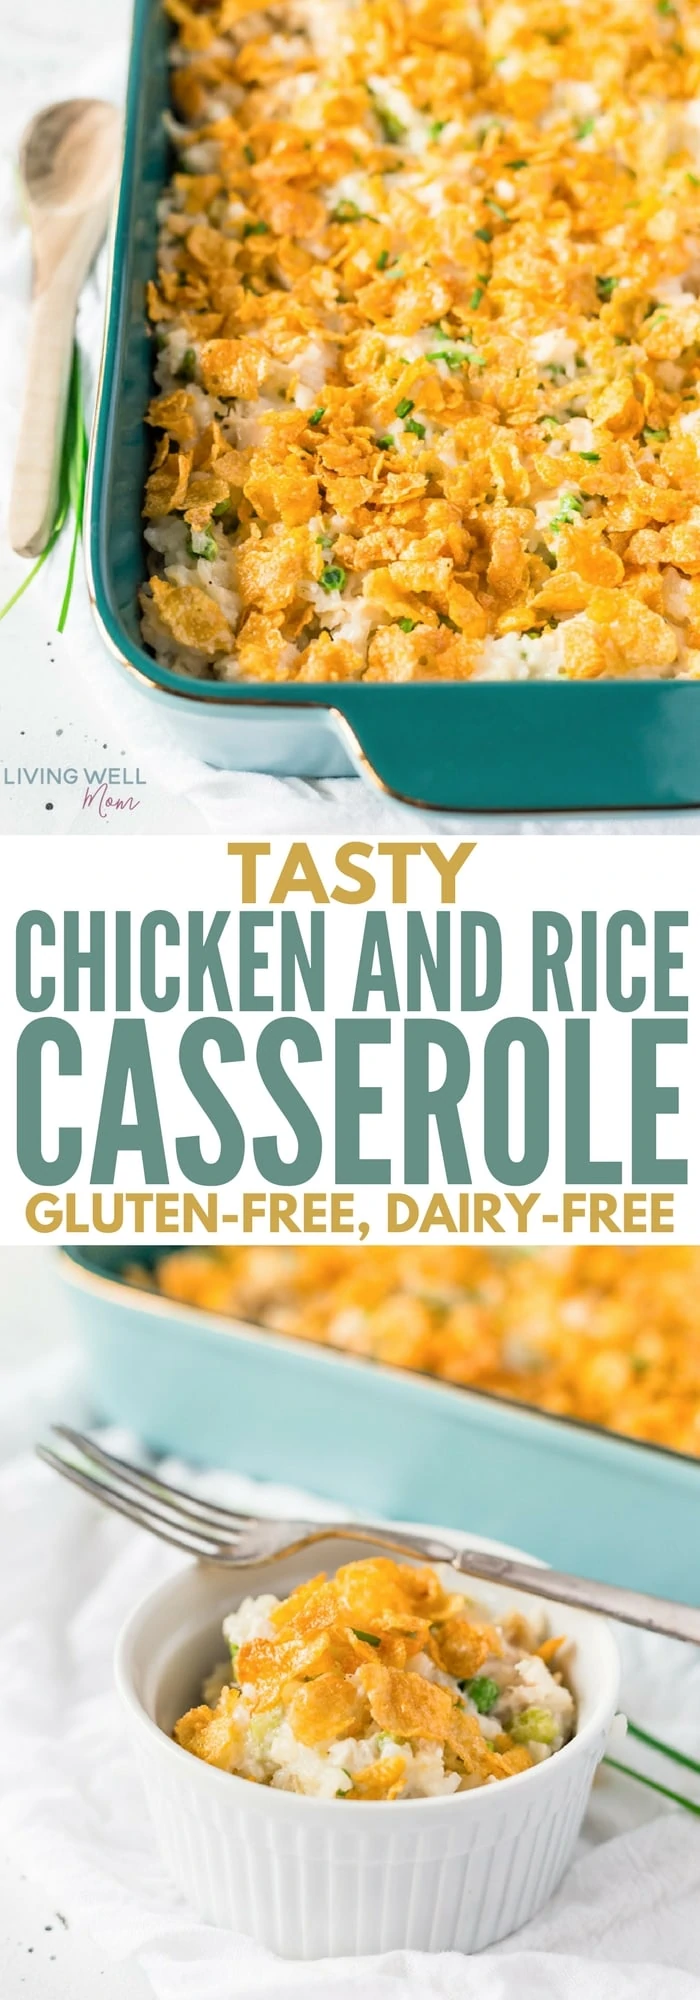 gluten-free chicken and rice casserole